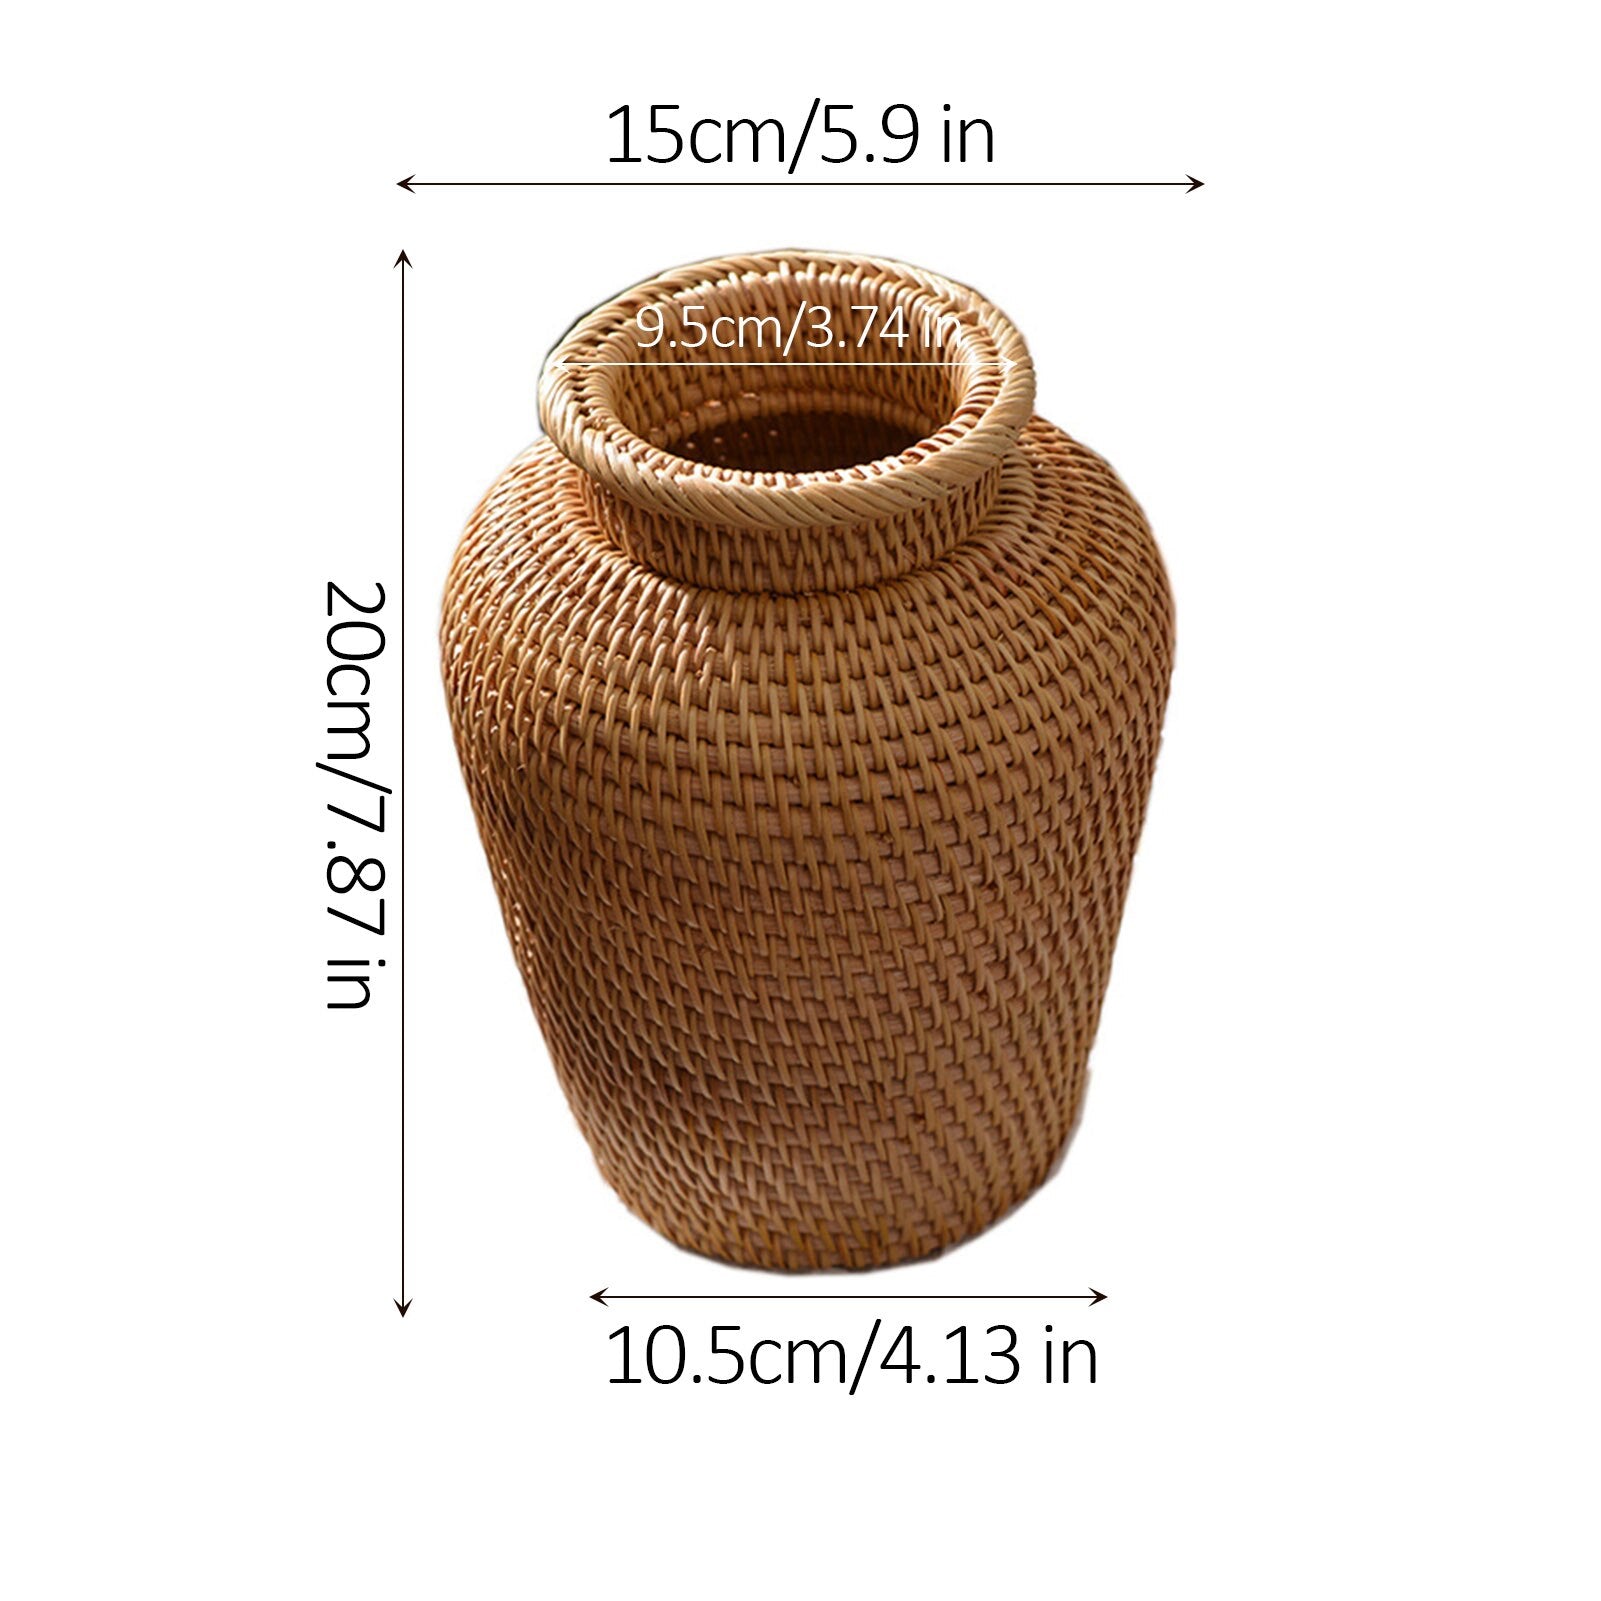 Woven Rattan Vase